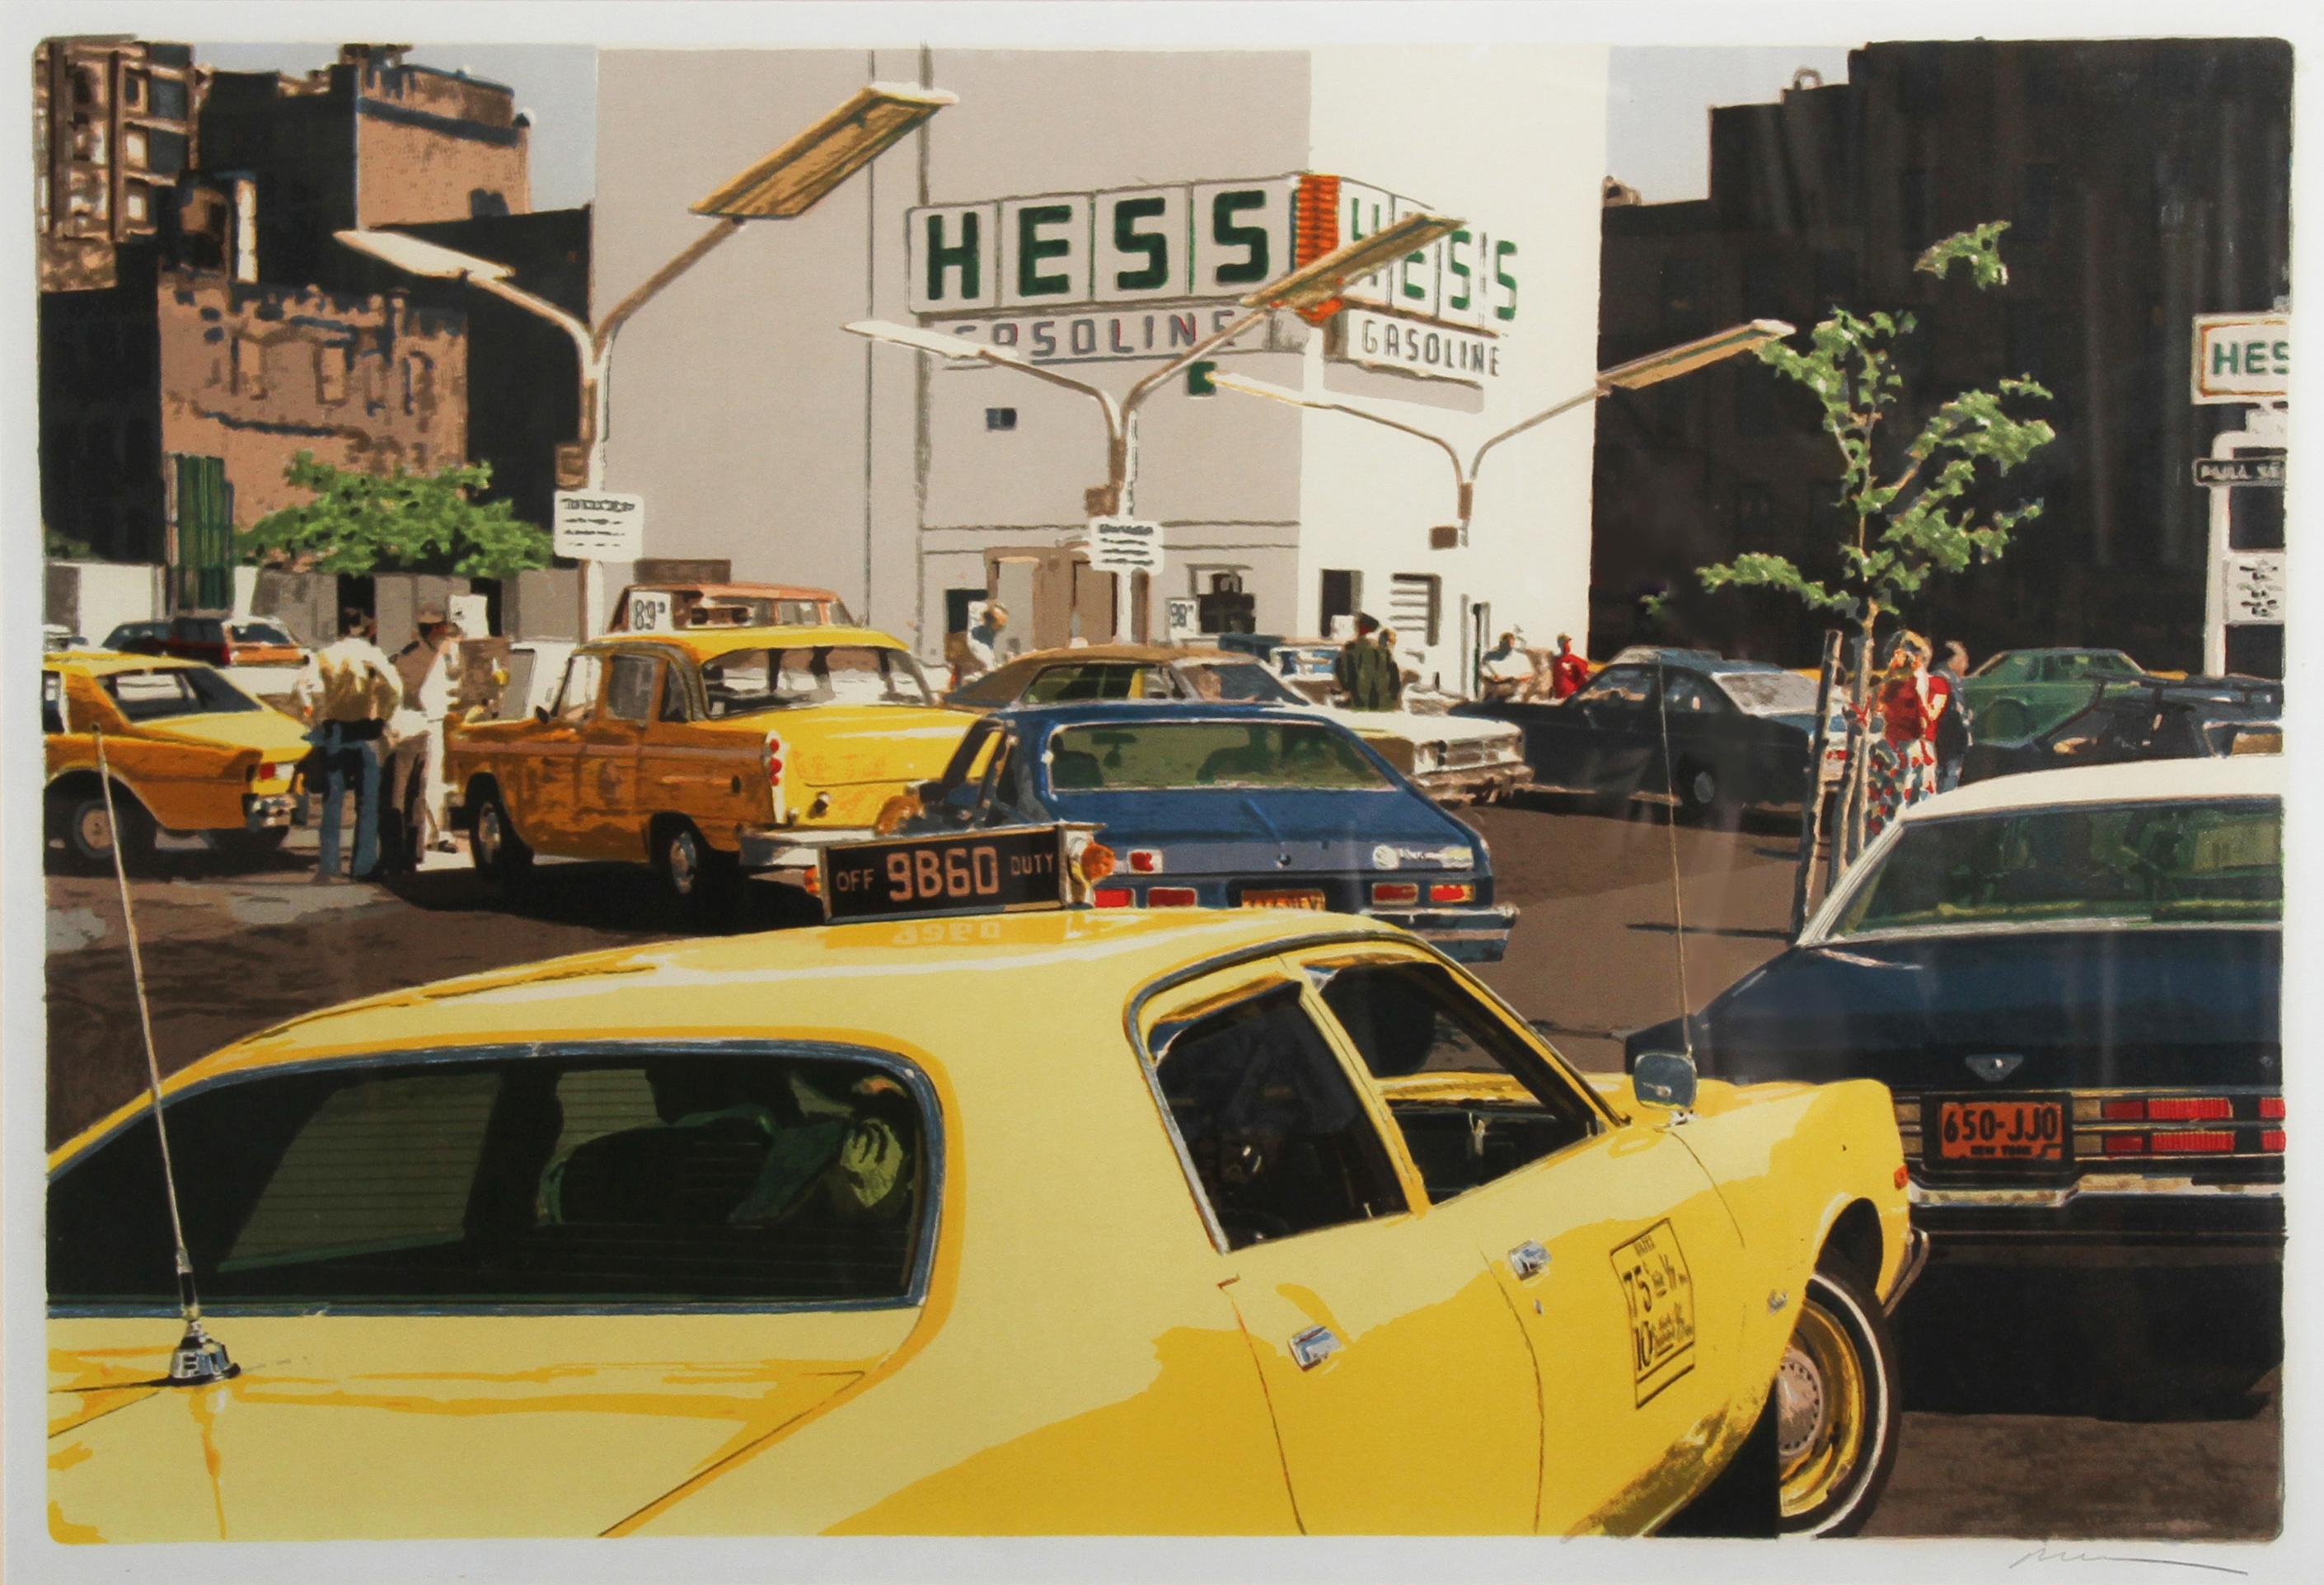 Künstler: Ron Kleemann, Amerikaner (1937 - ) 
Titel:  Gasleitung aus dem CityScapes-Portfolio
Jahr: 1981
Medium: Serigrafie auf Somerset-Papier, mit Bleistift signiert und nummeriert 
Auflage: 250
Papierformat: 22 x 30 Zoll (56 x 76 cm)